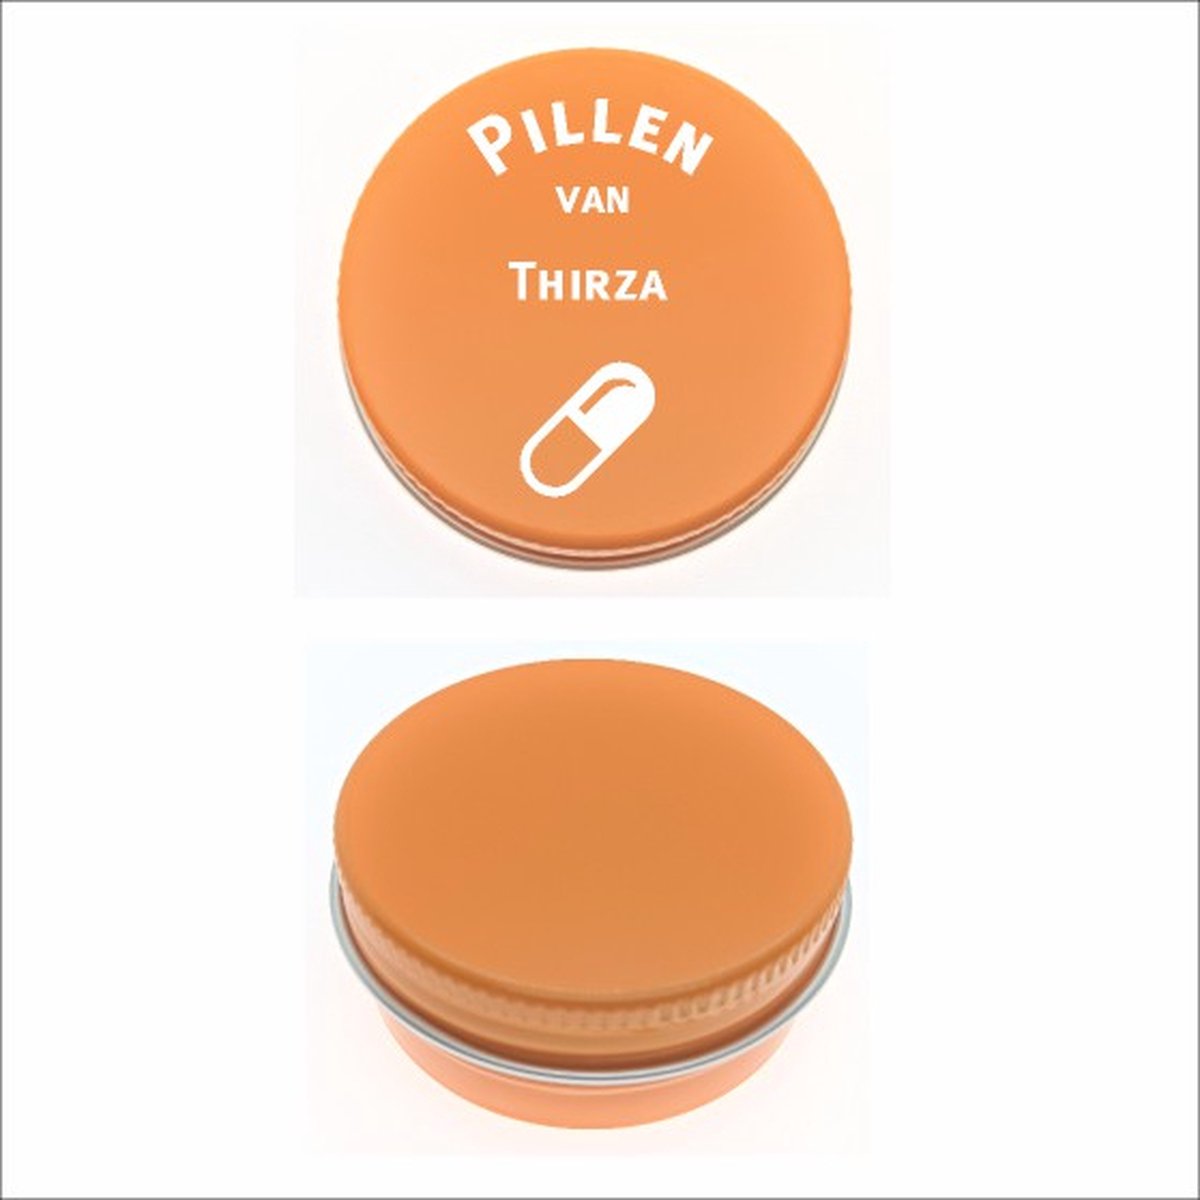 Pillen Blikje Met Naam Gravering - Thirza